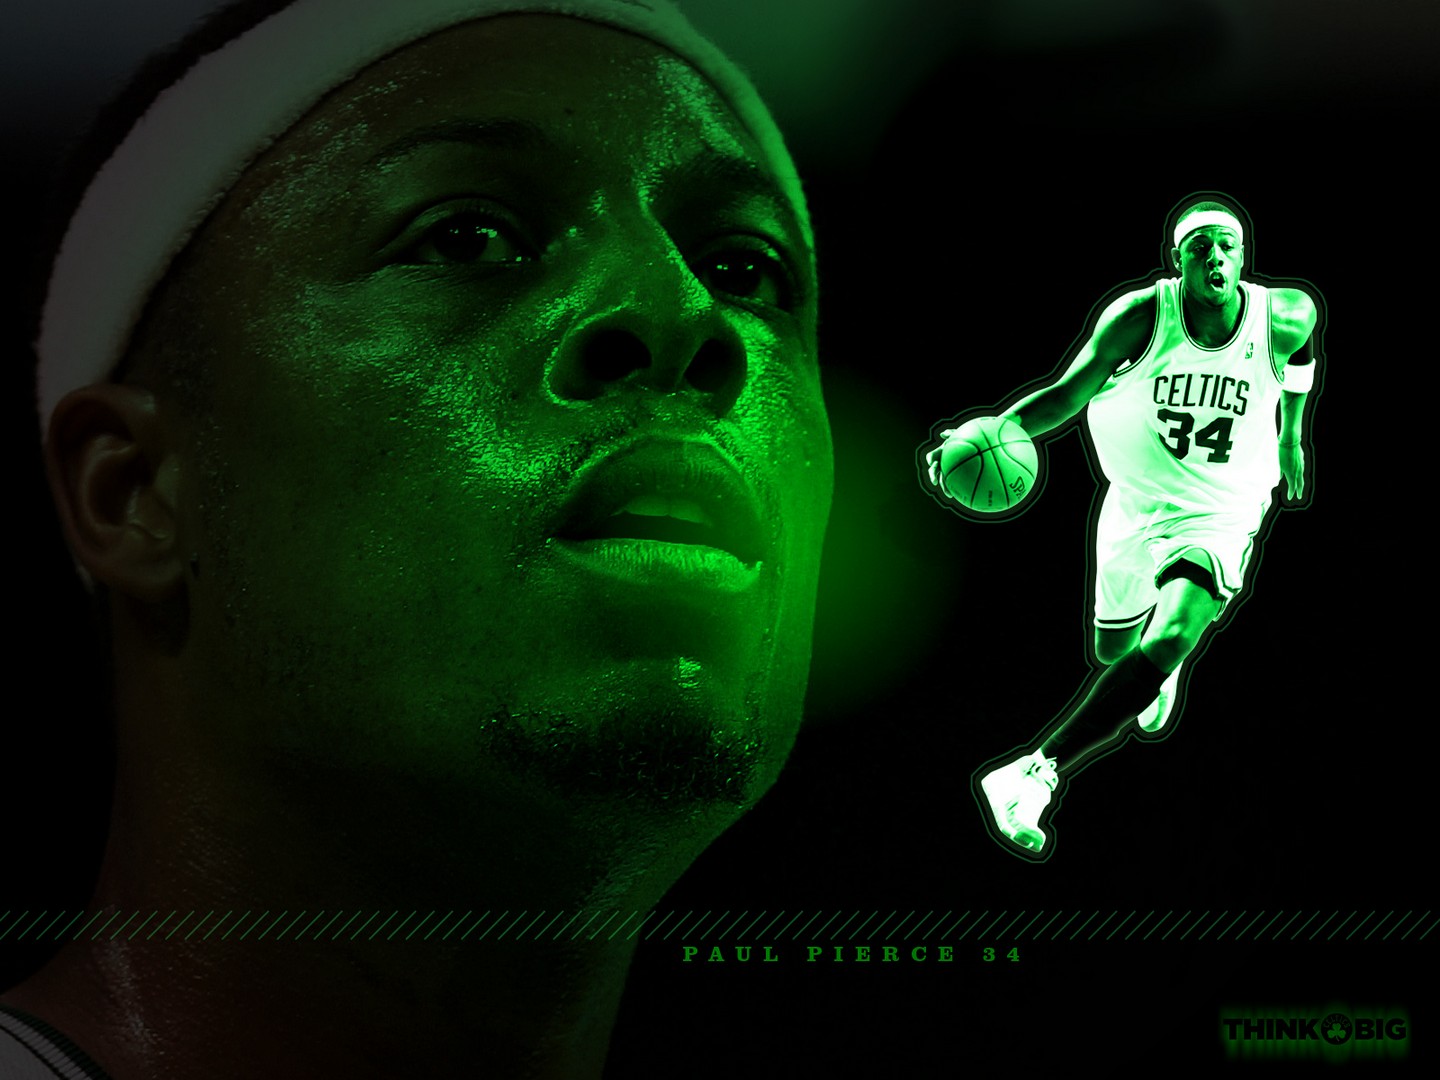 Paul Pierce Wallpaper – Fighter of Boston Celtics, Hope He is Fine ...